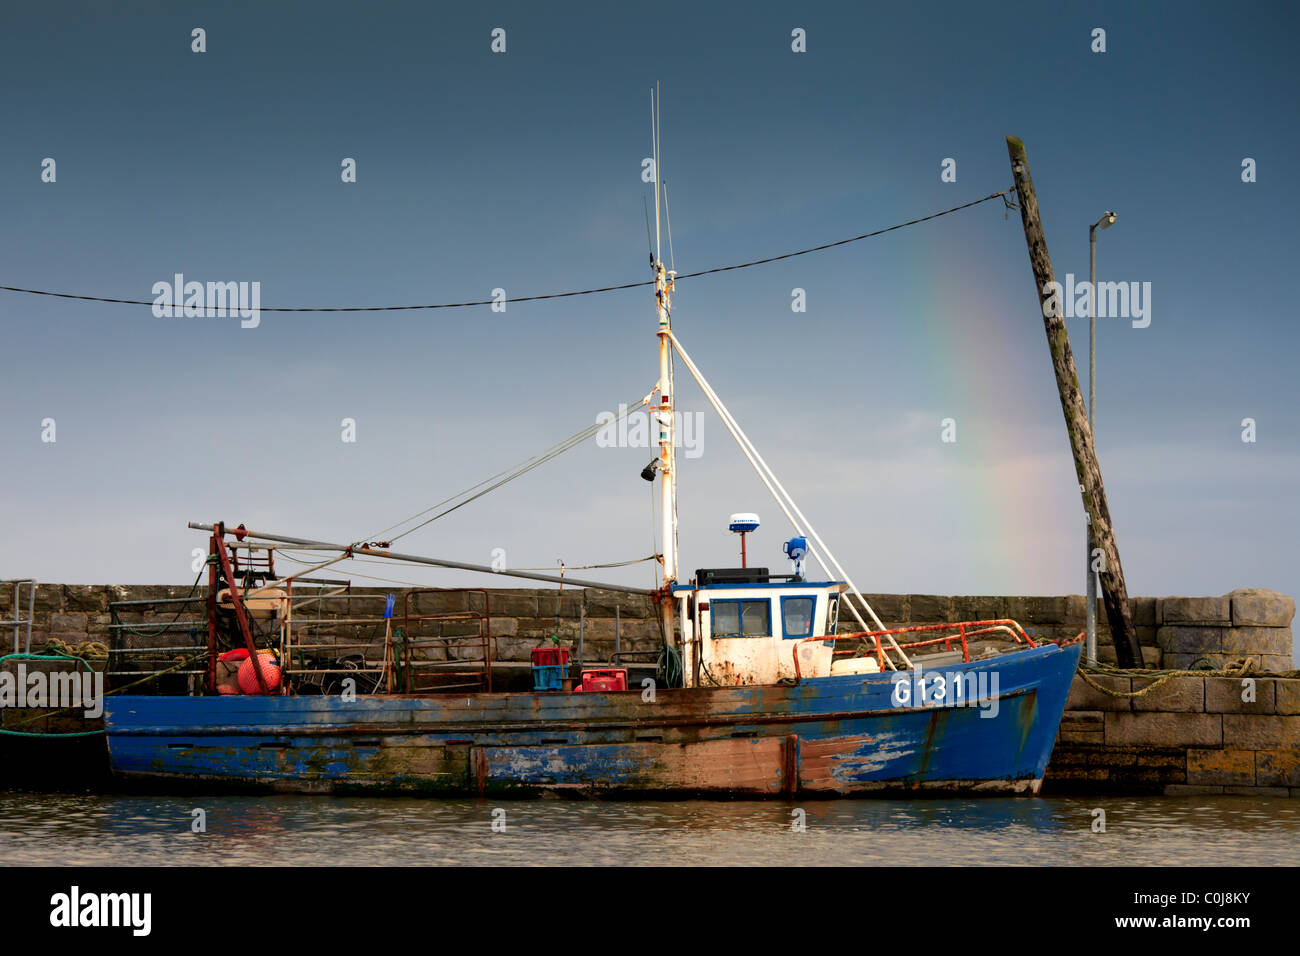 Irish fishing boat, Kilbaha Harbour County Clare Ireland Stock Photo